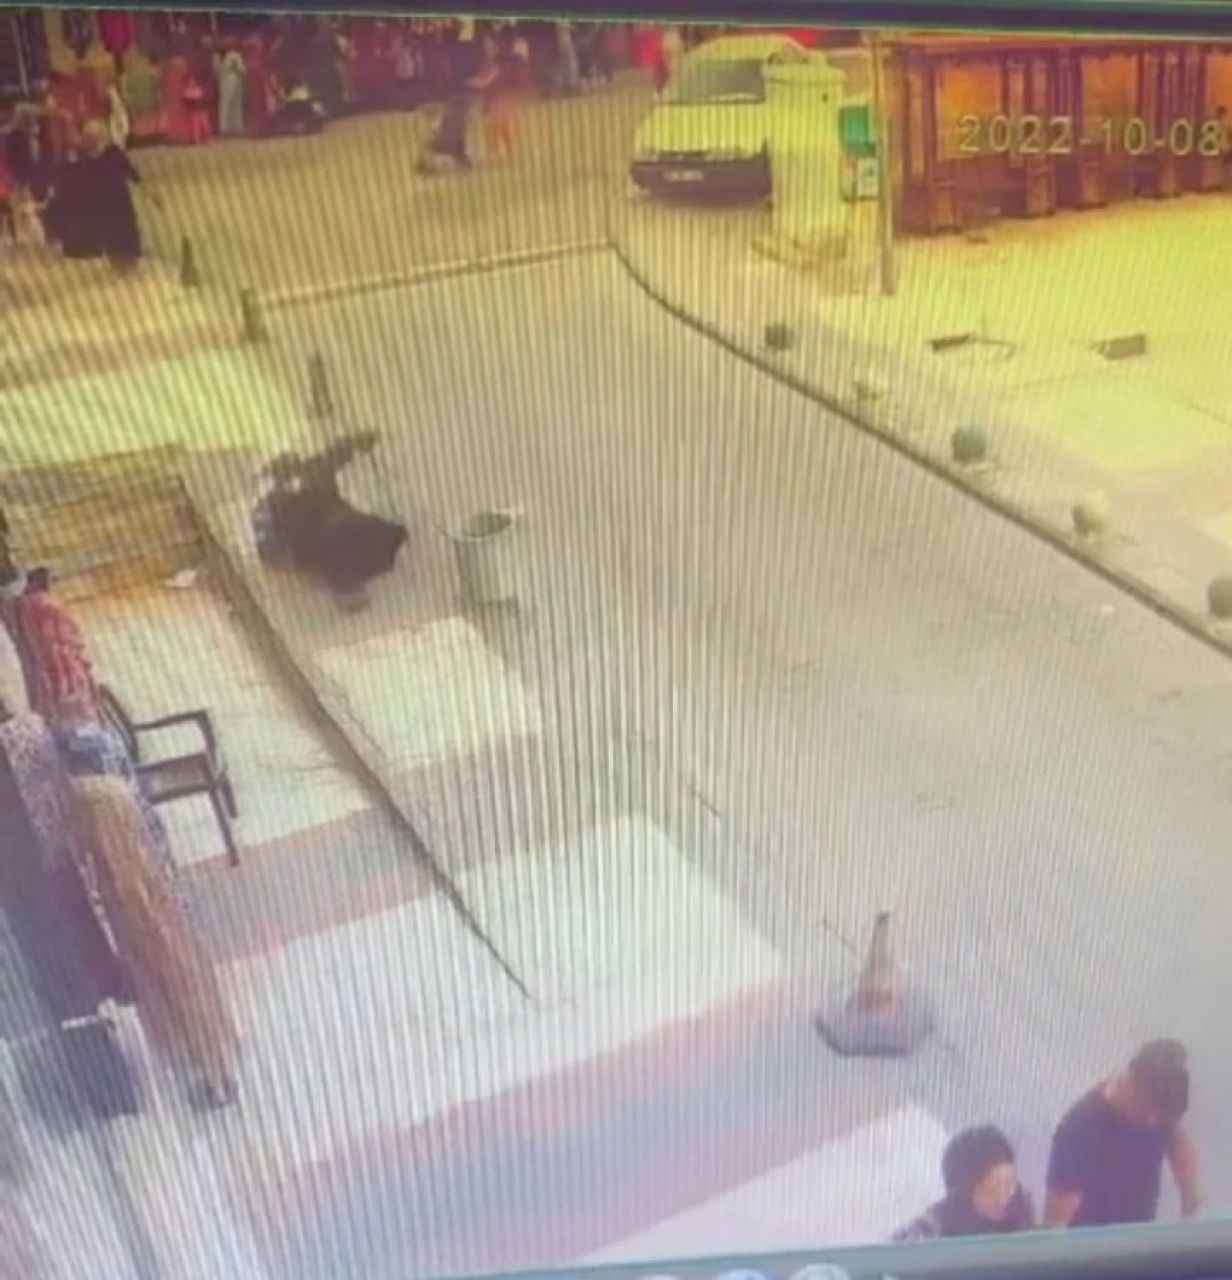 Urfa'da kaldırımda kayarak düşen kadın hastanelik oldu